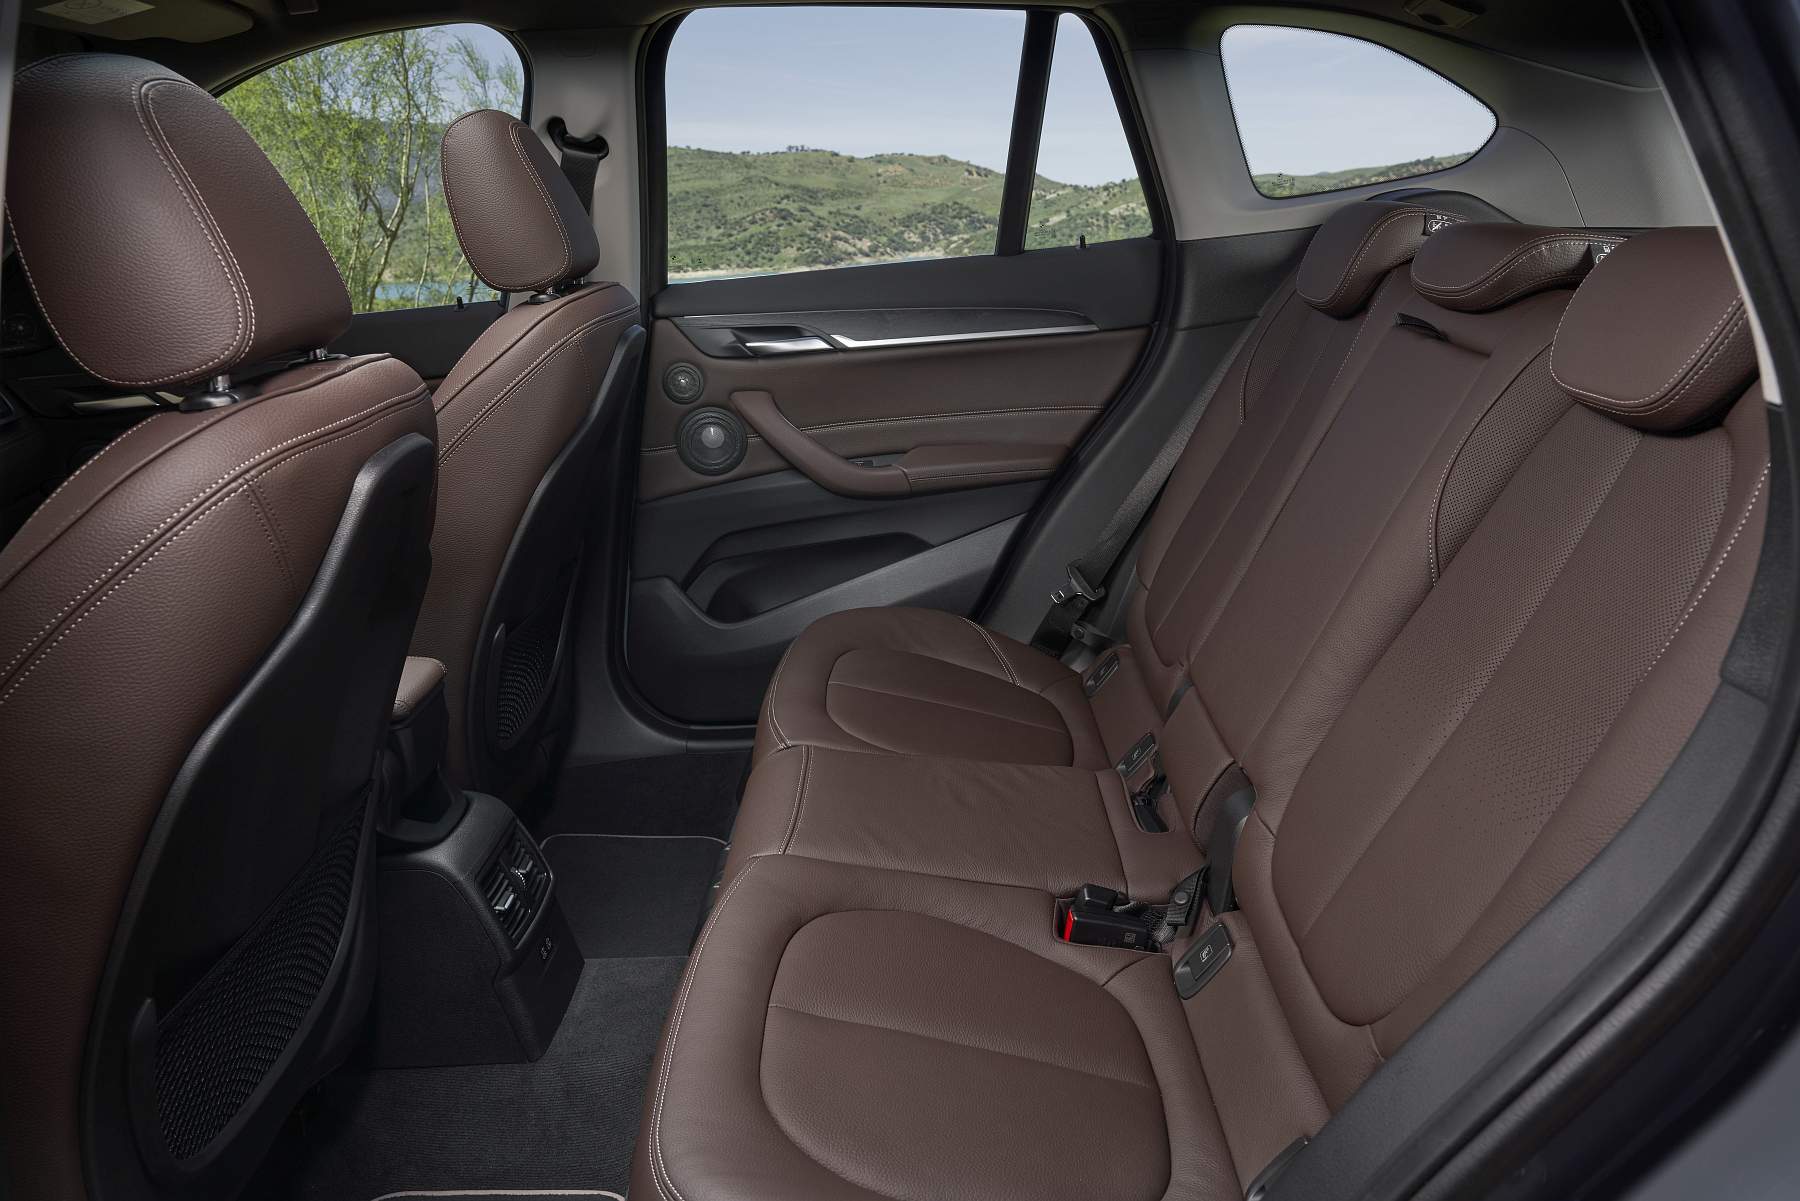 BMW X1 2019 interiores (4)